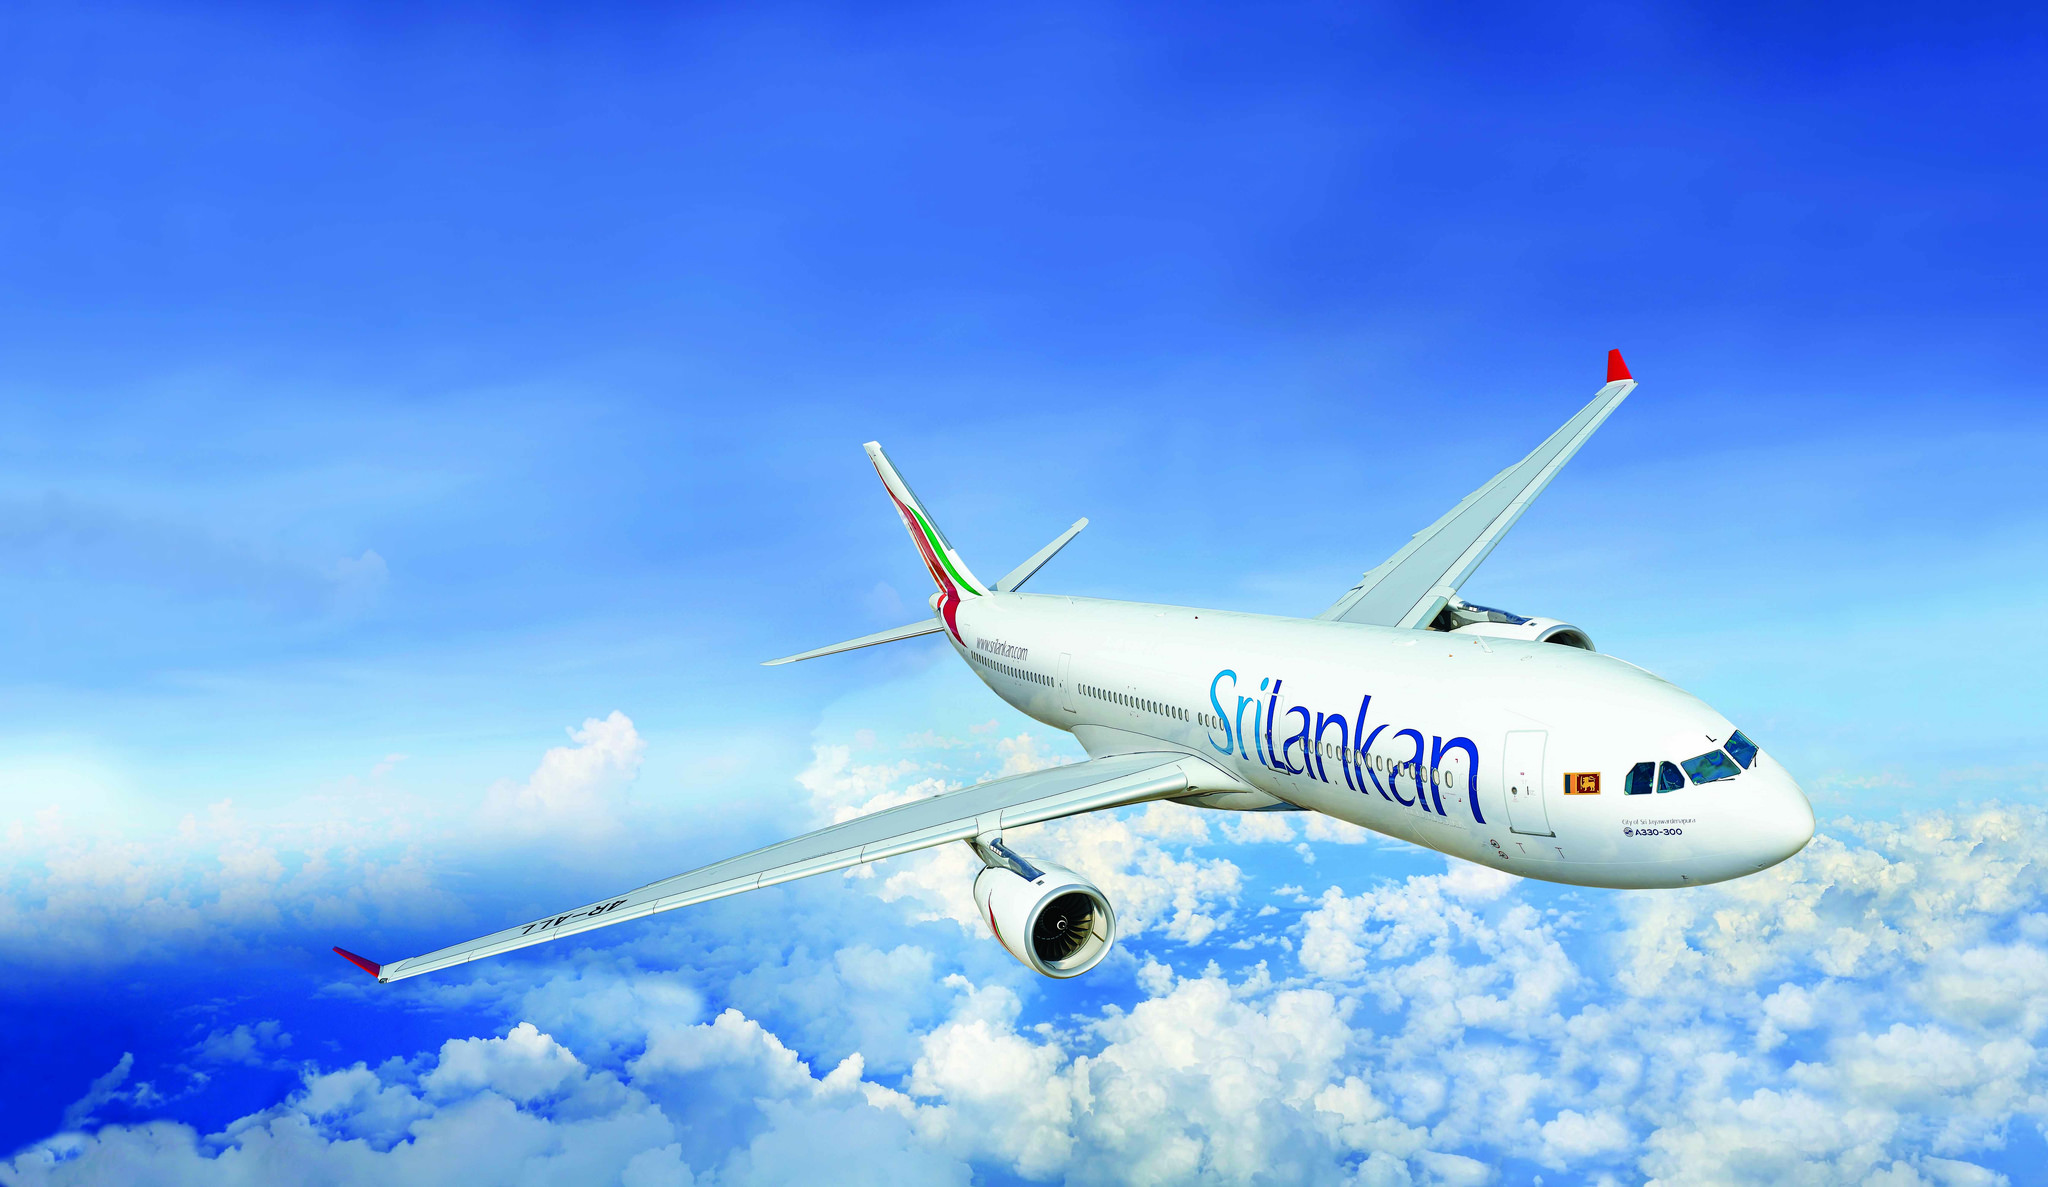 Una rata polizón aterriza un vuelo de SriLankan Airlines y genera preocupación entre los inversores